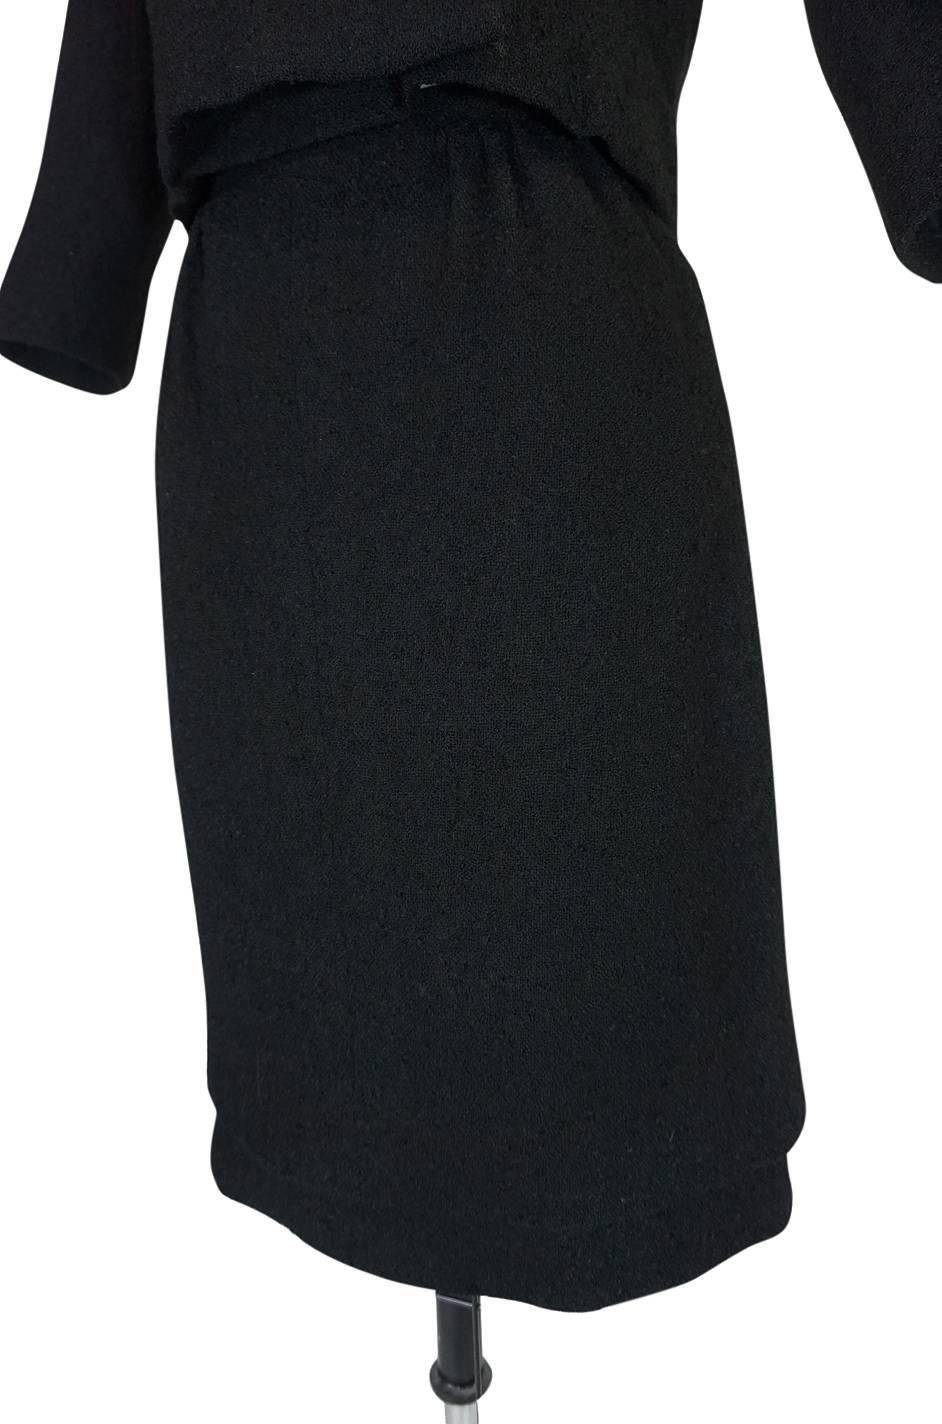 c1957 Black Cristobal Balenciaga Haute Couture Suit 1